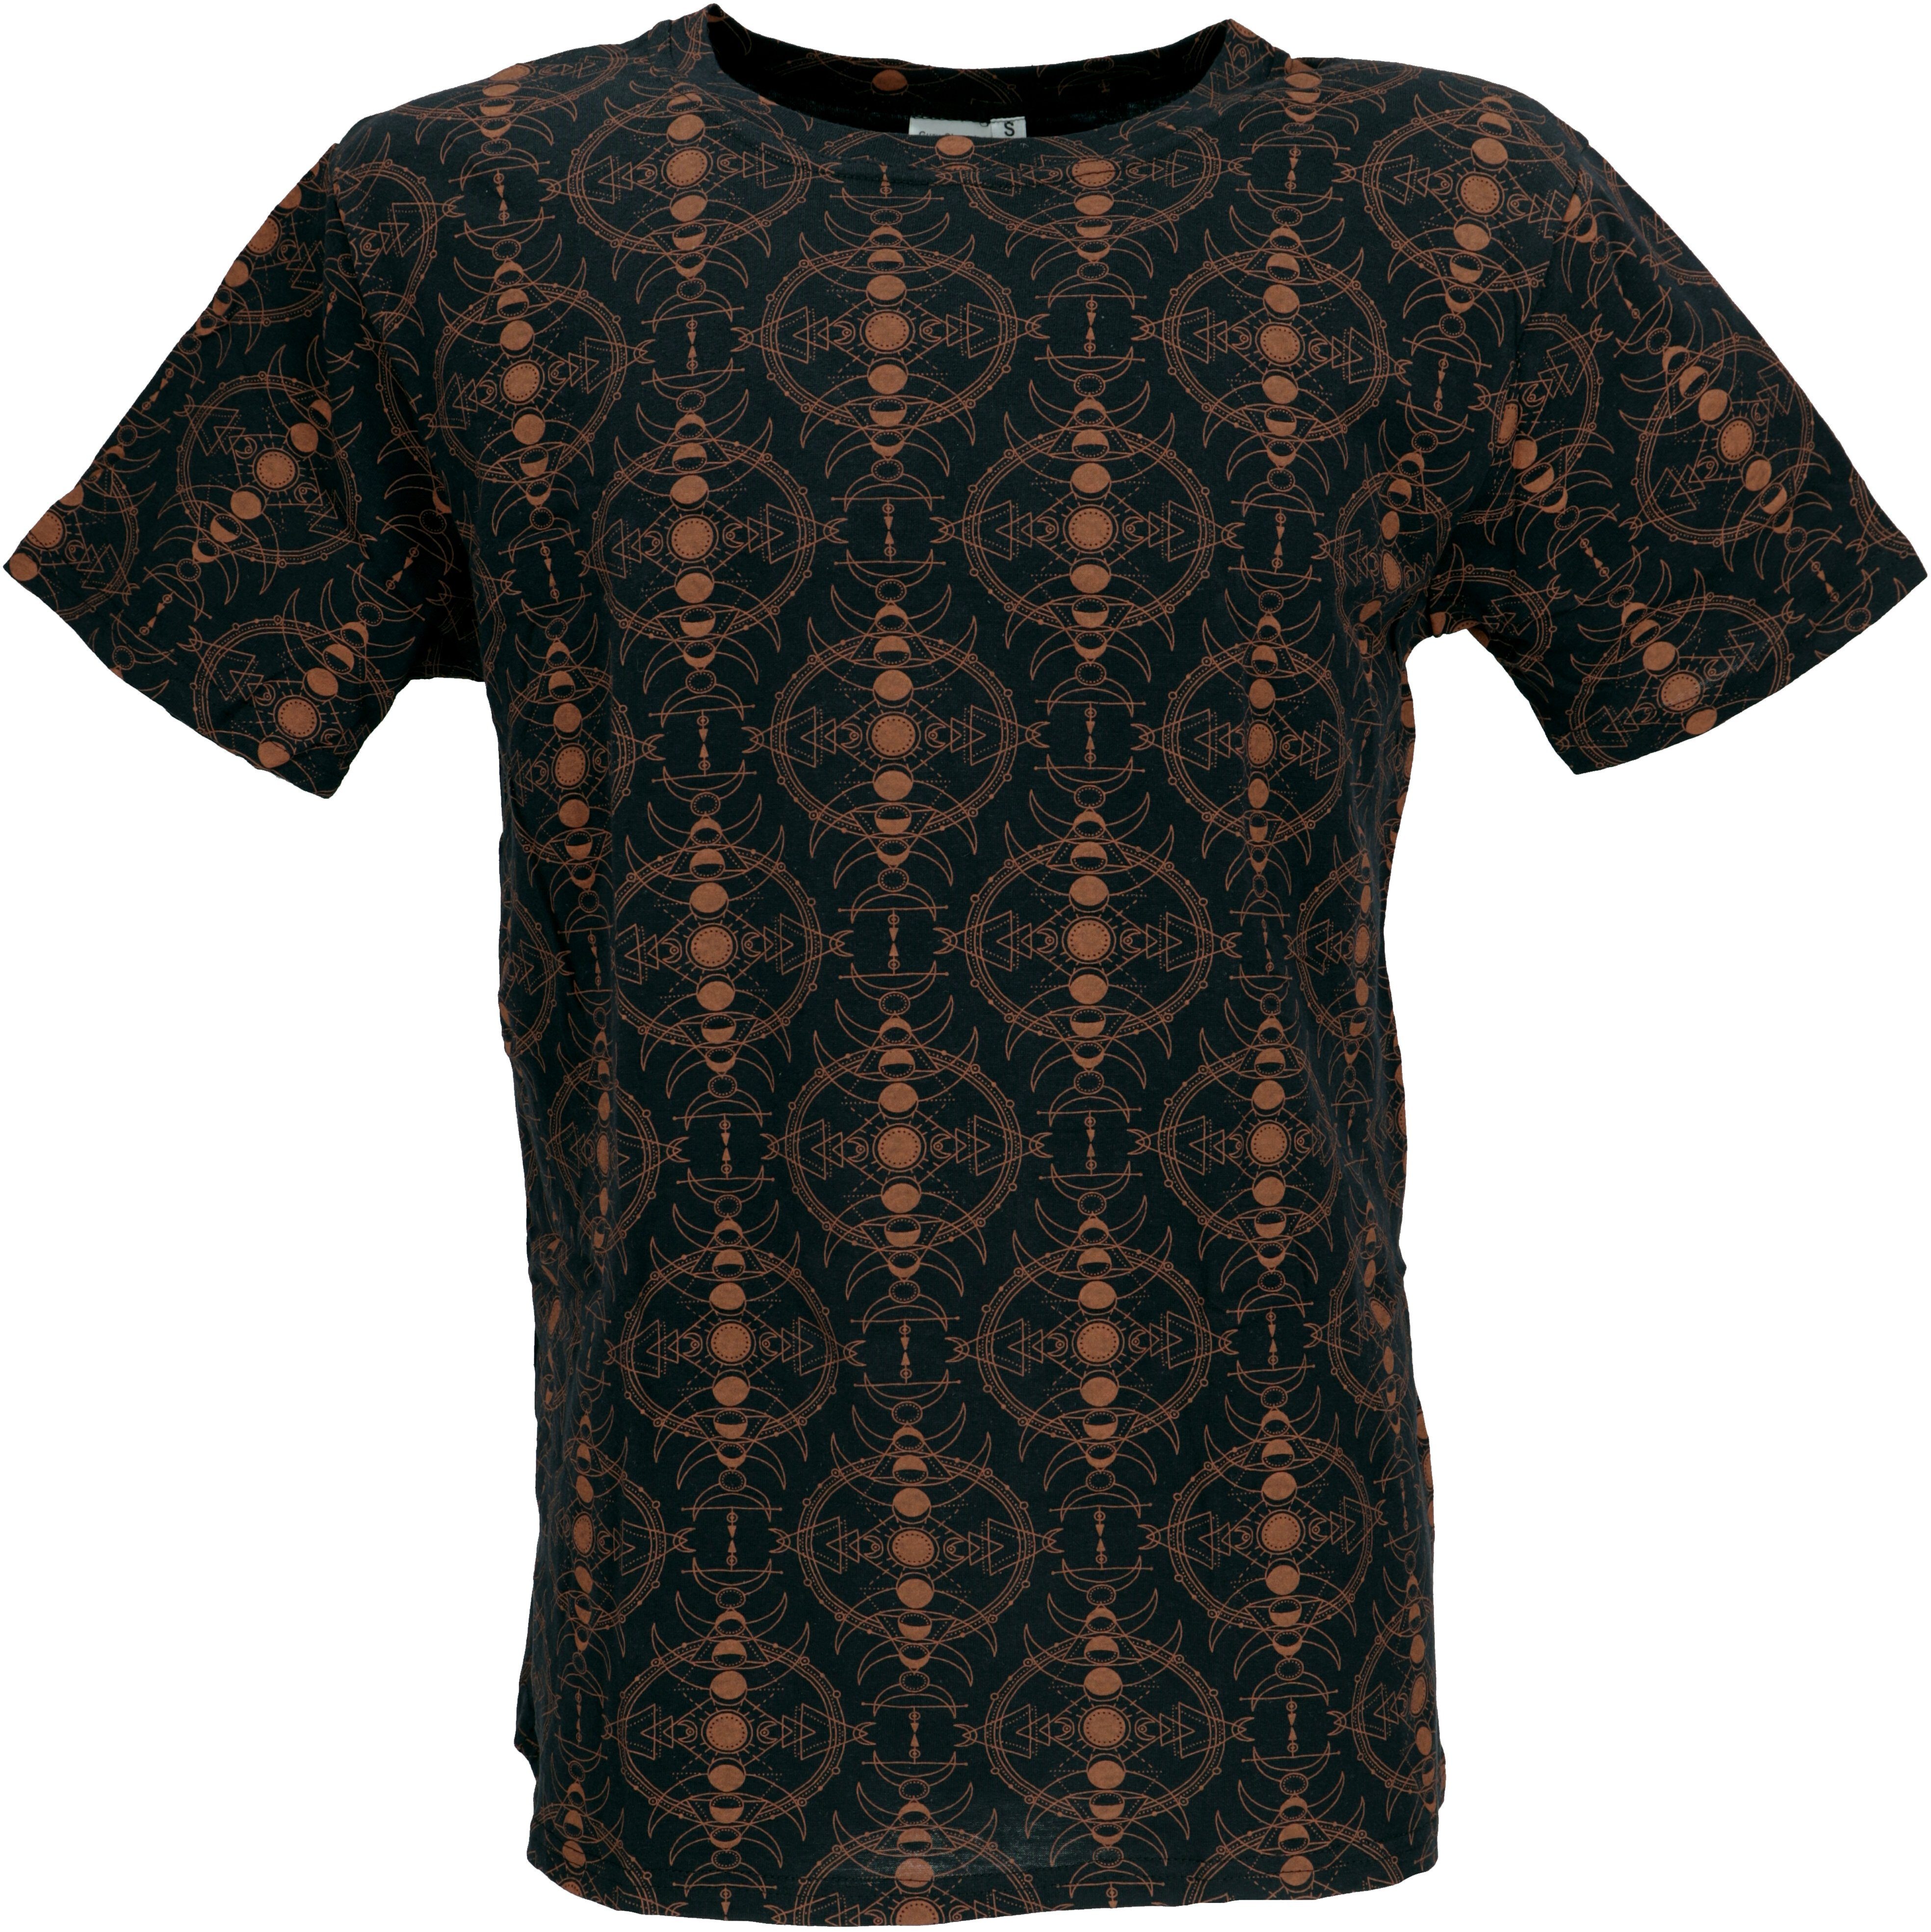 Guru-Shop T-Shirt T-Shirt mit psychodelischem Druck, Goa T-Shirt.. alternative Bekleidung schwarz/rost